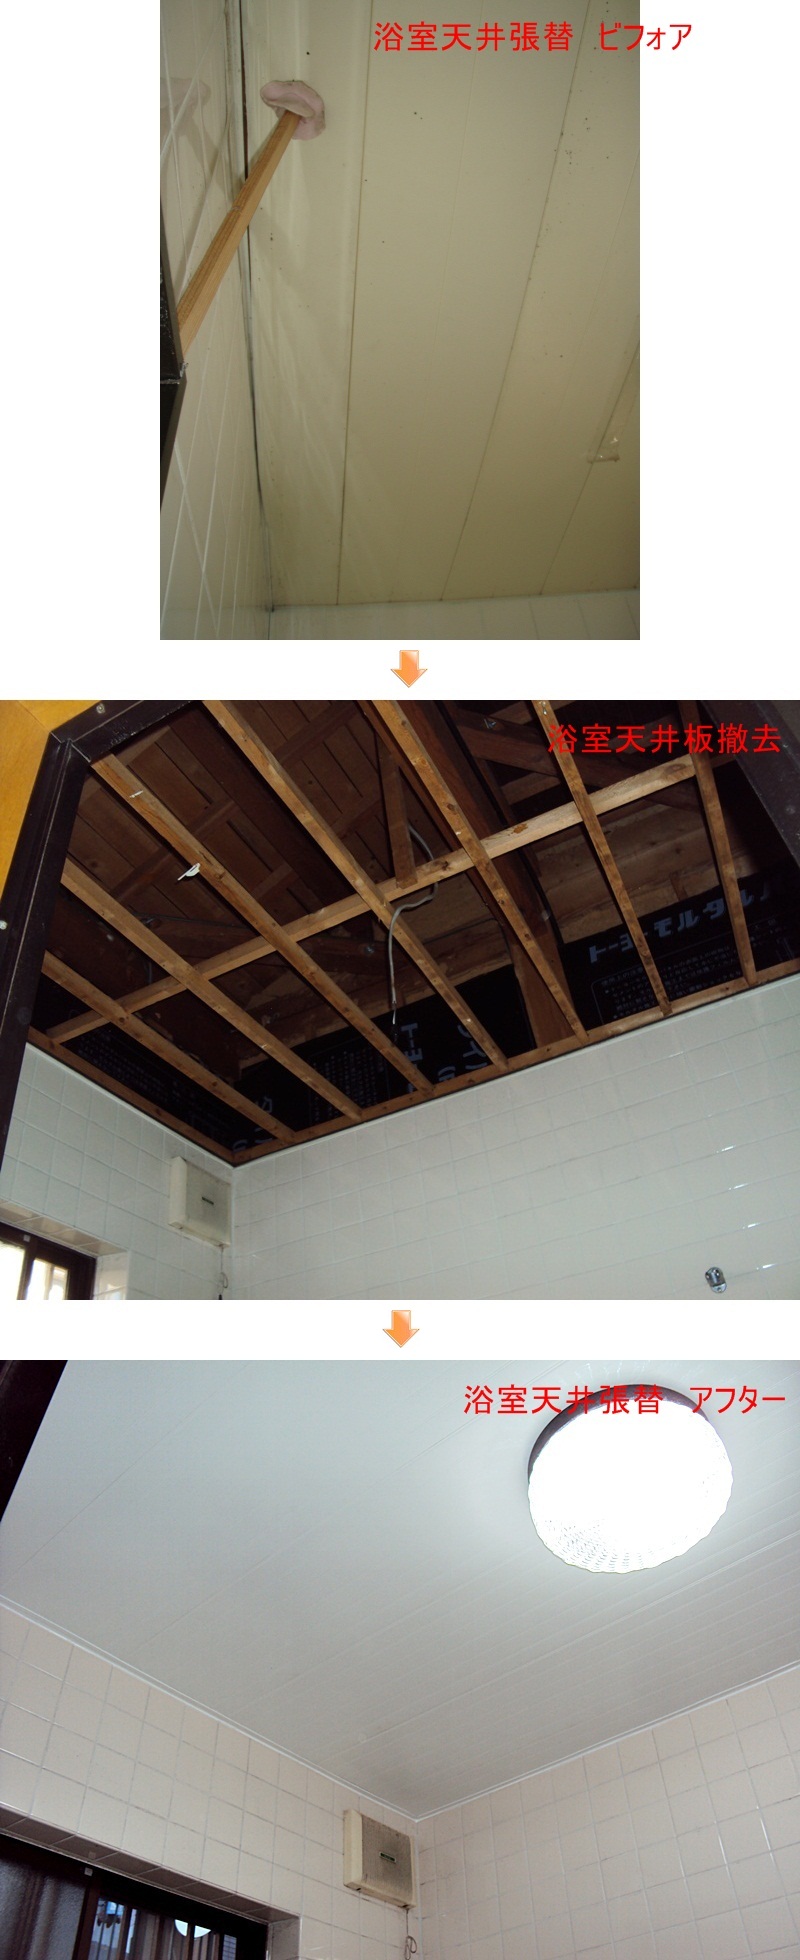 既存の垂れ下がった浴室天井板を撤去し、新たに貼りなおしました。